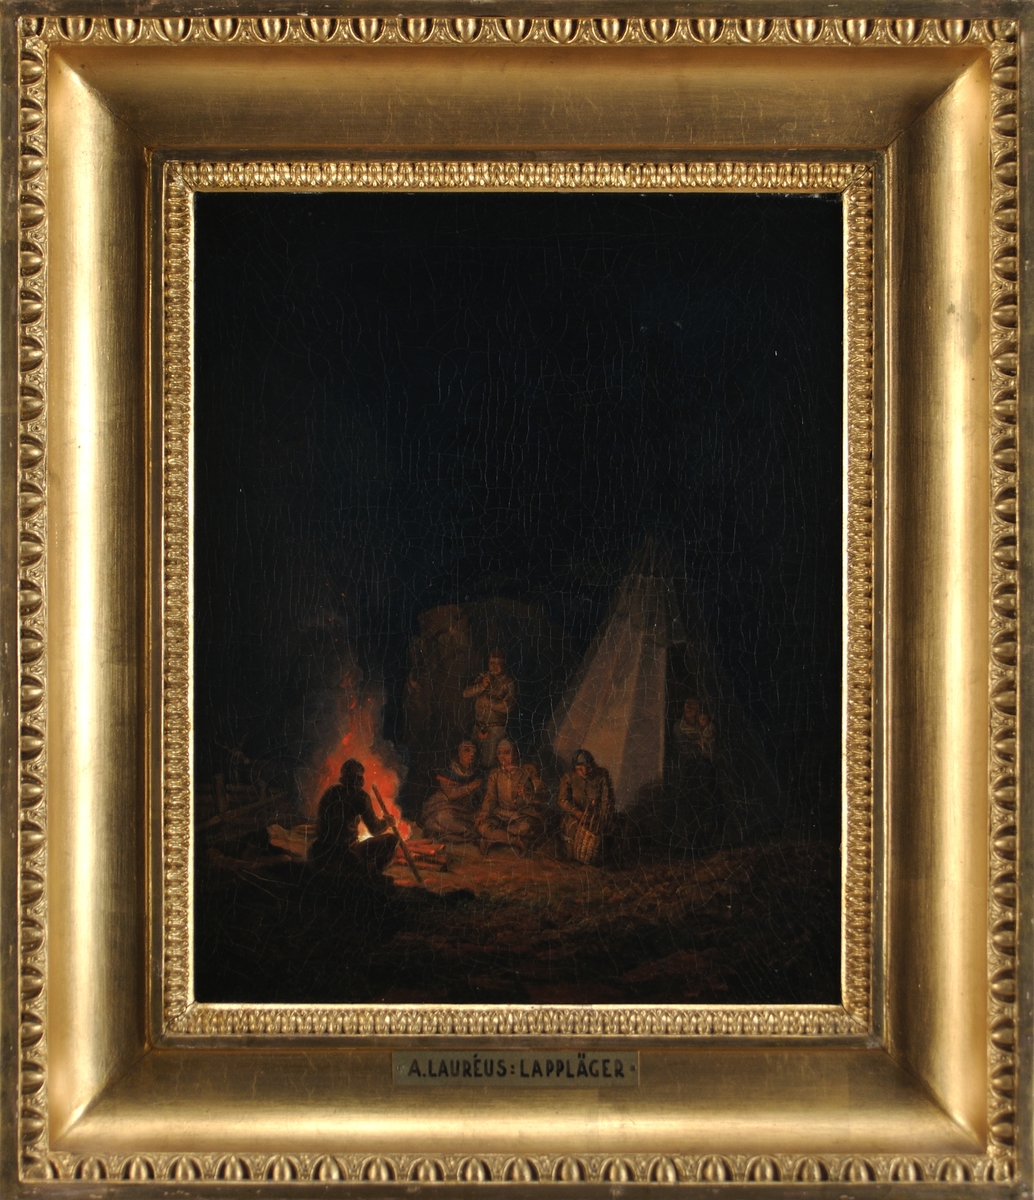 Samisk familj utanför kåta, ett par män röker, en arbetar med en korg. Till vänster flammande eld. Mörk bakgrund. Natt.